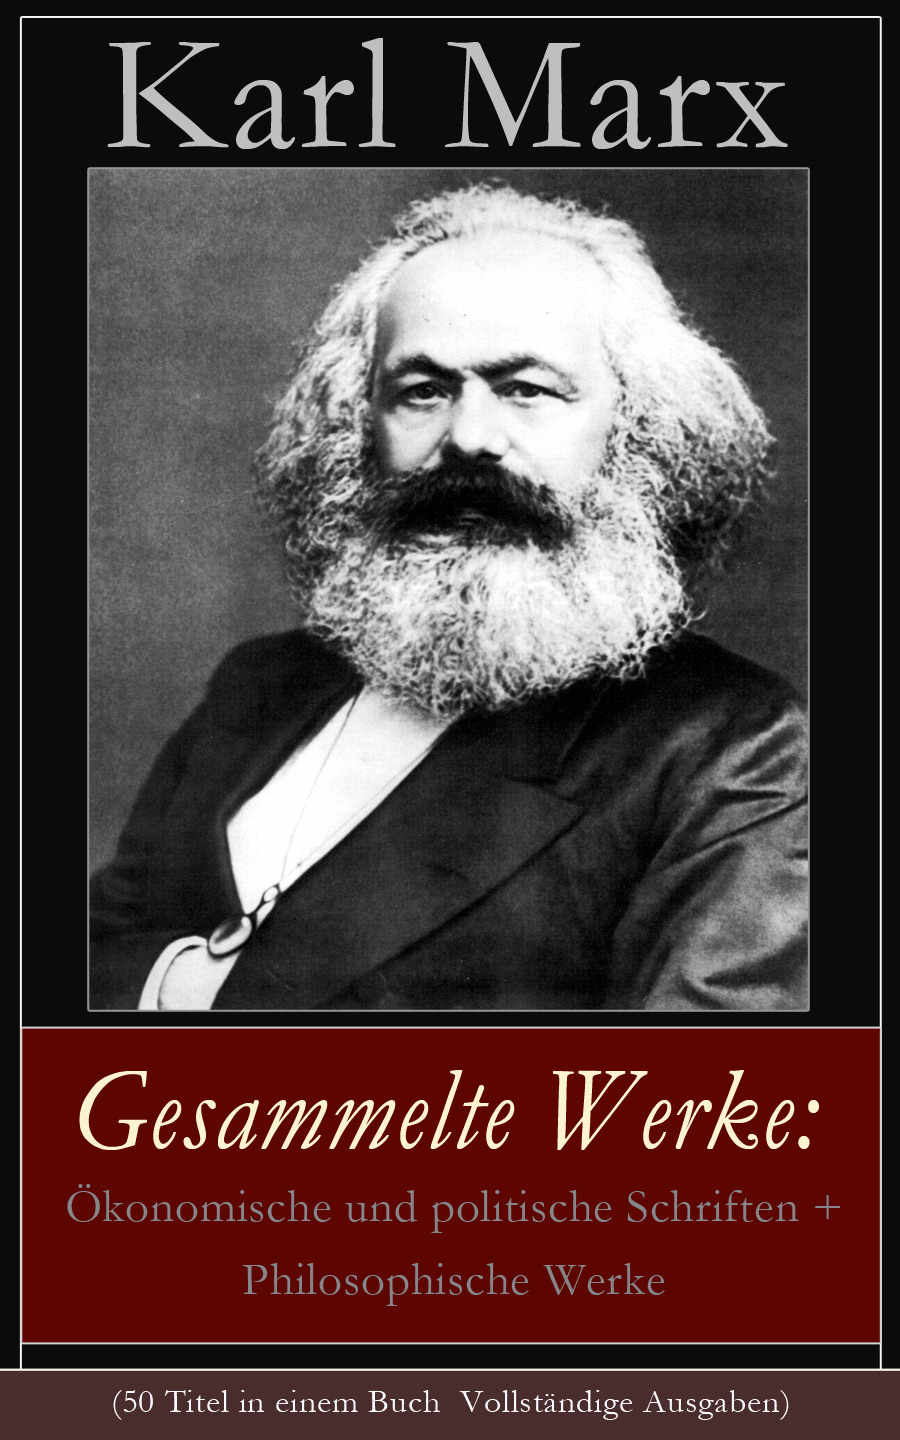 Marx,K./Engels,F.,Gesammelte Werke